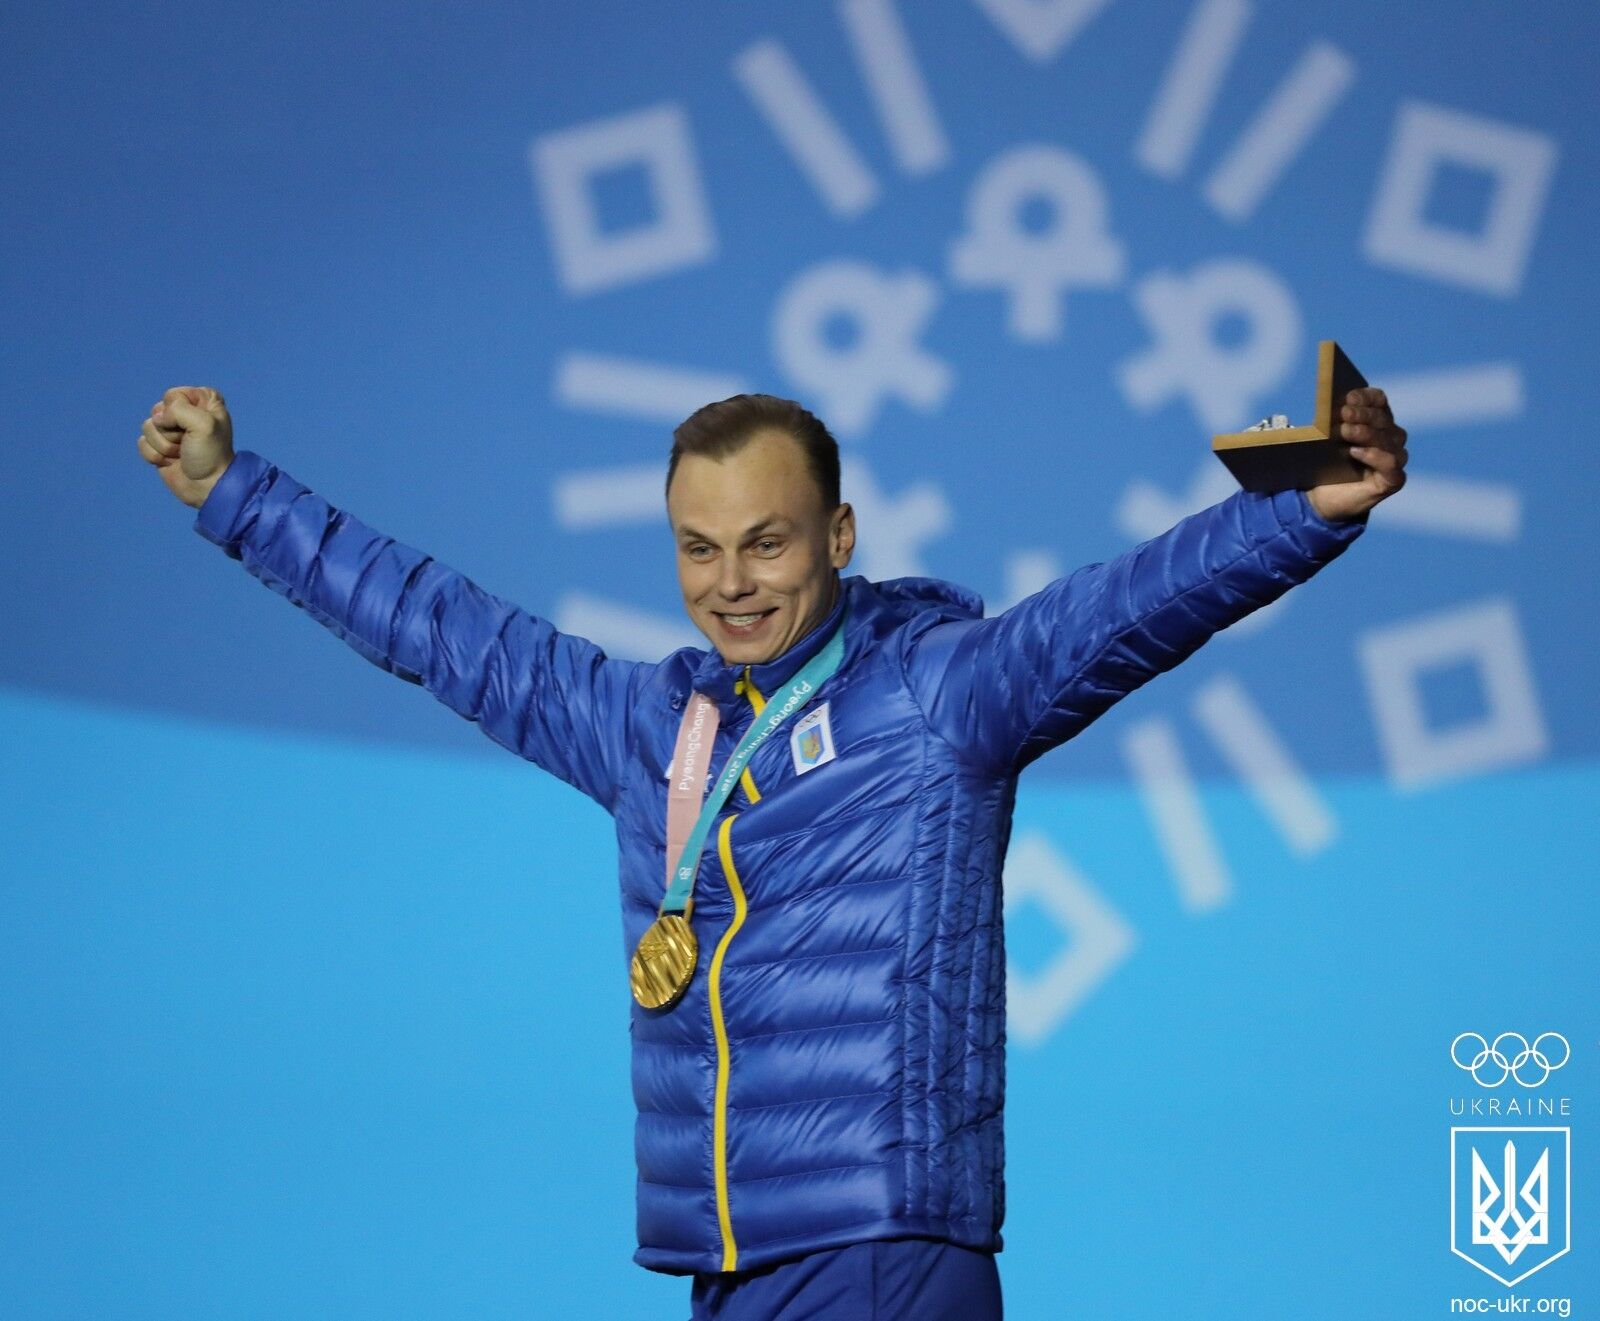 До слез! Появились фото и видео награждения украинского чемпиона Олимпиады-2018